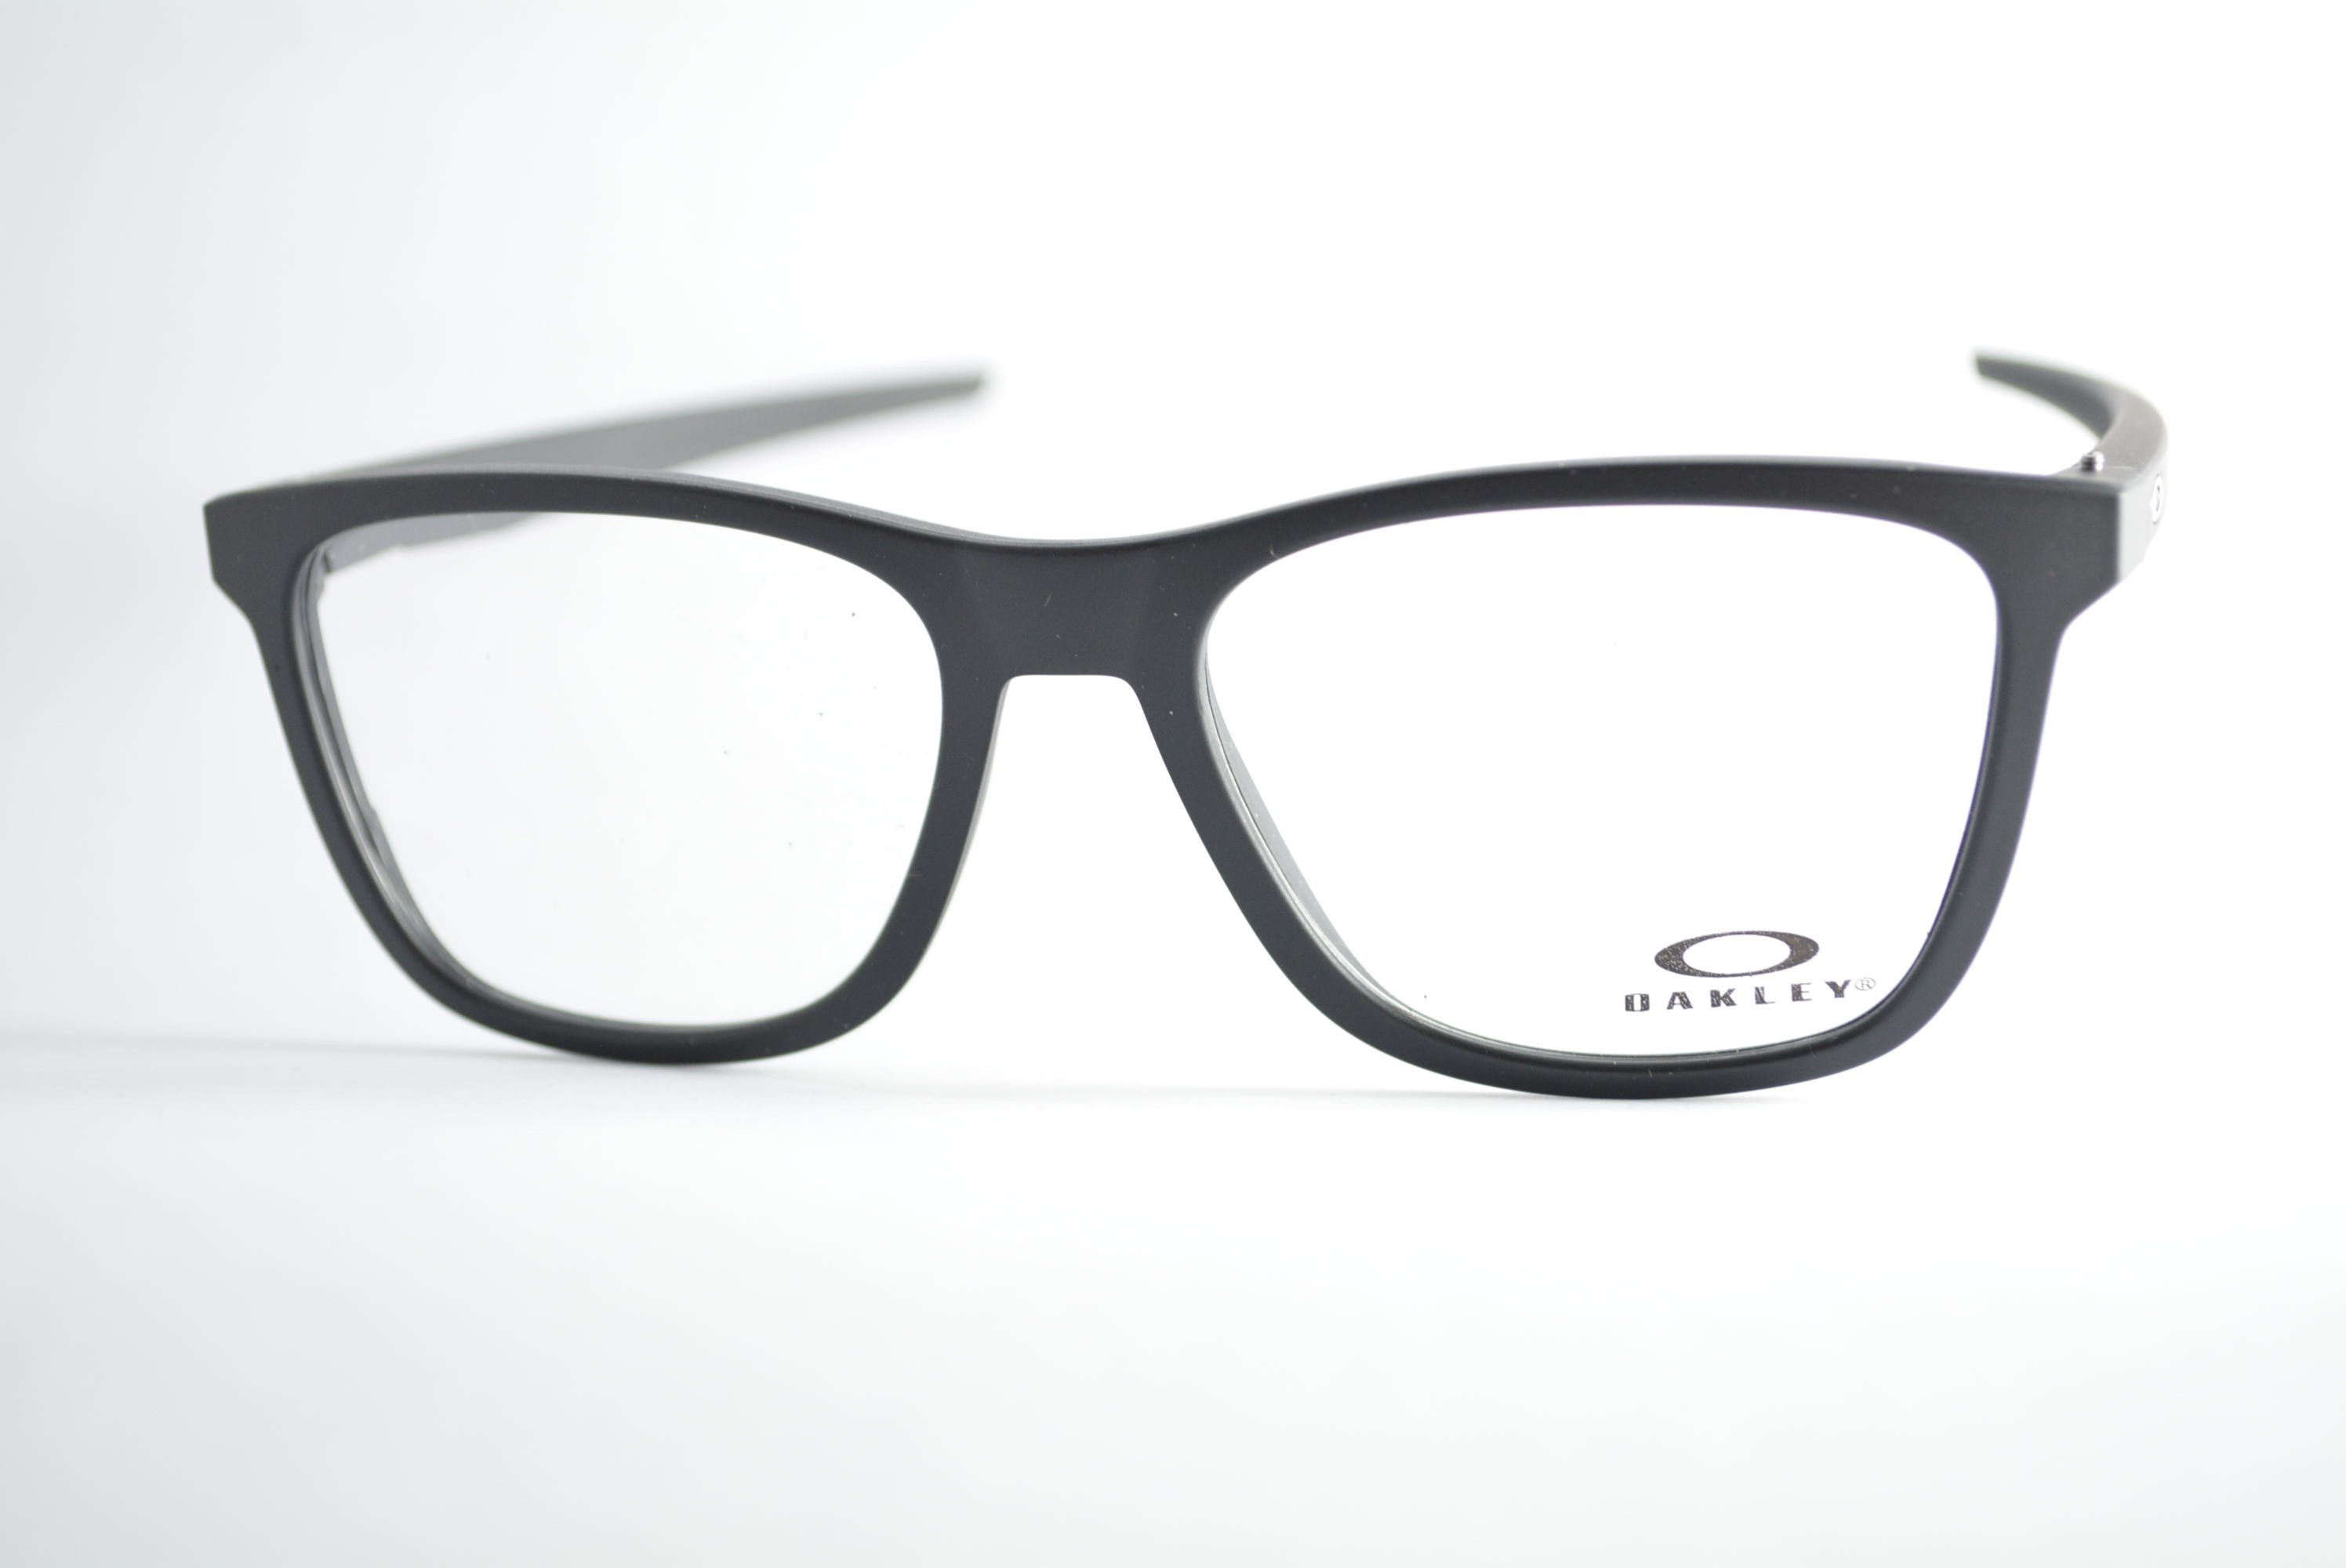 armação de óculos Oakley mod Centerboard ox8163L-0155